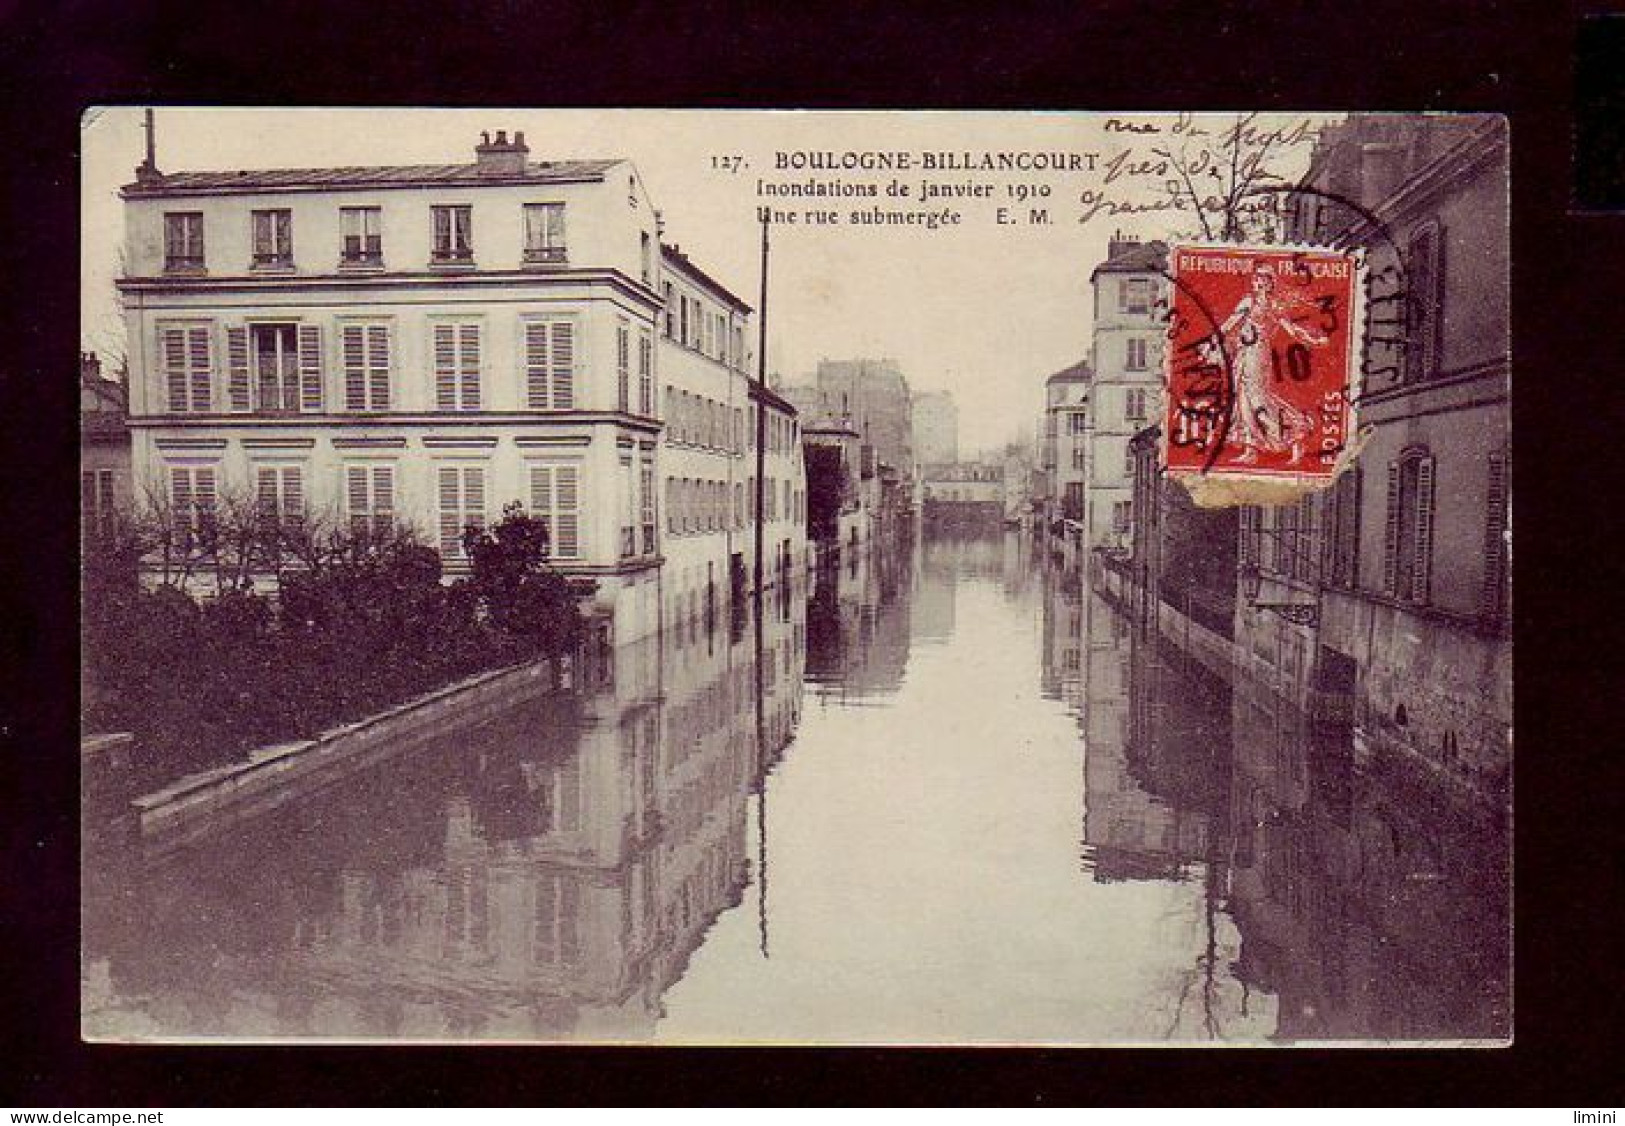 92 - INONDATION 1910 - BOULOGNE-BILLANCOURT - UNE RUE SUBMERGÉE -  - Boulogne Billancourt